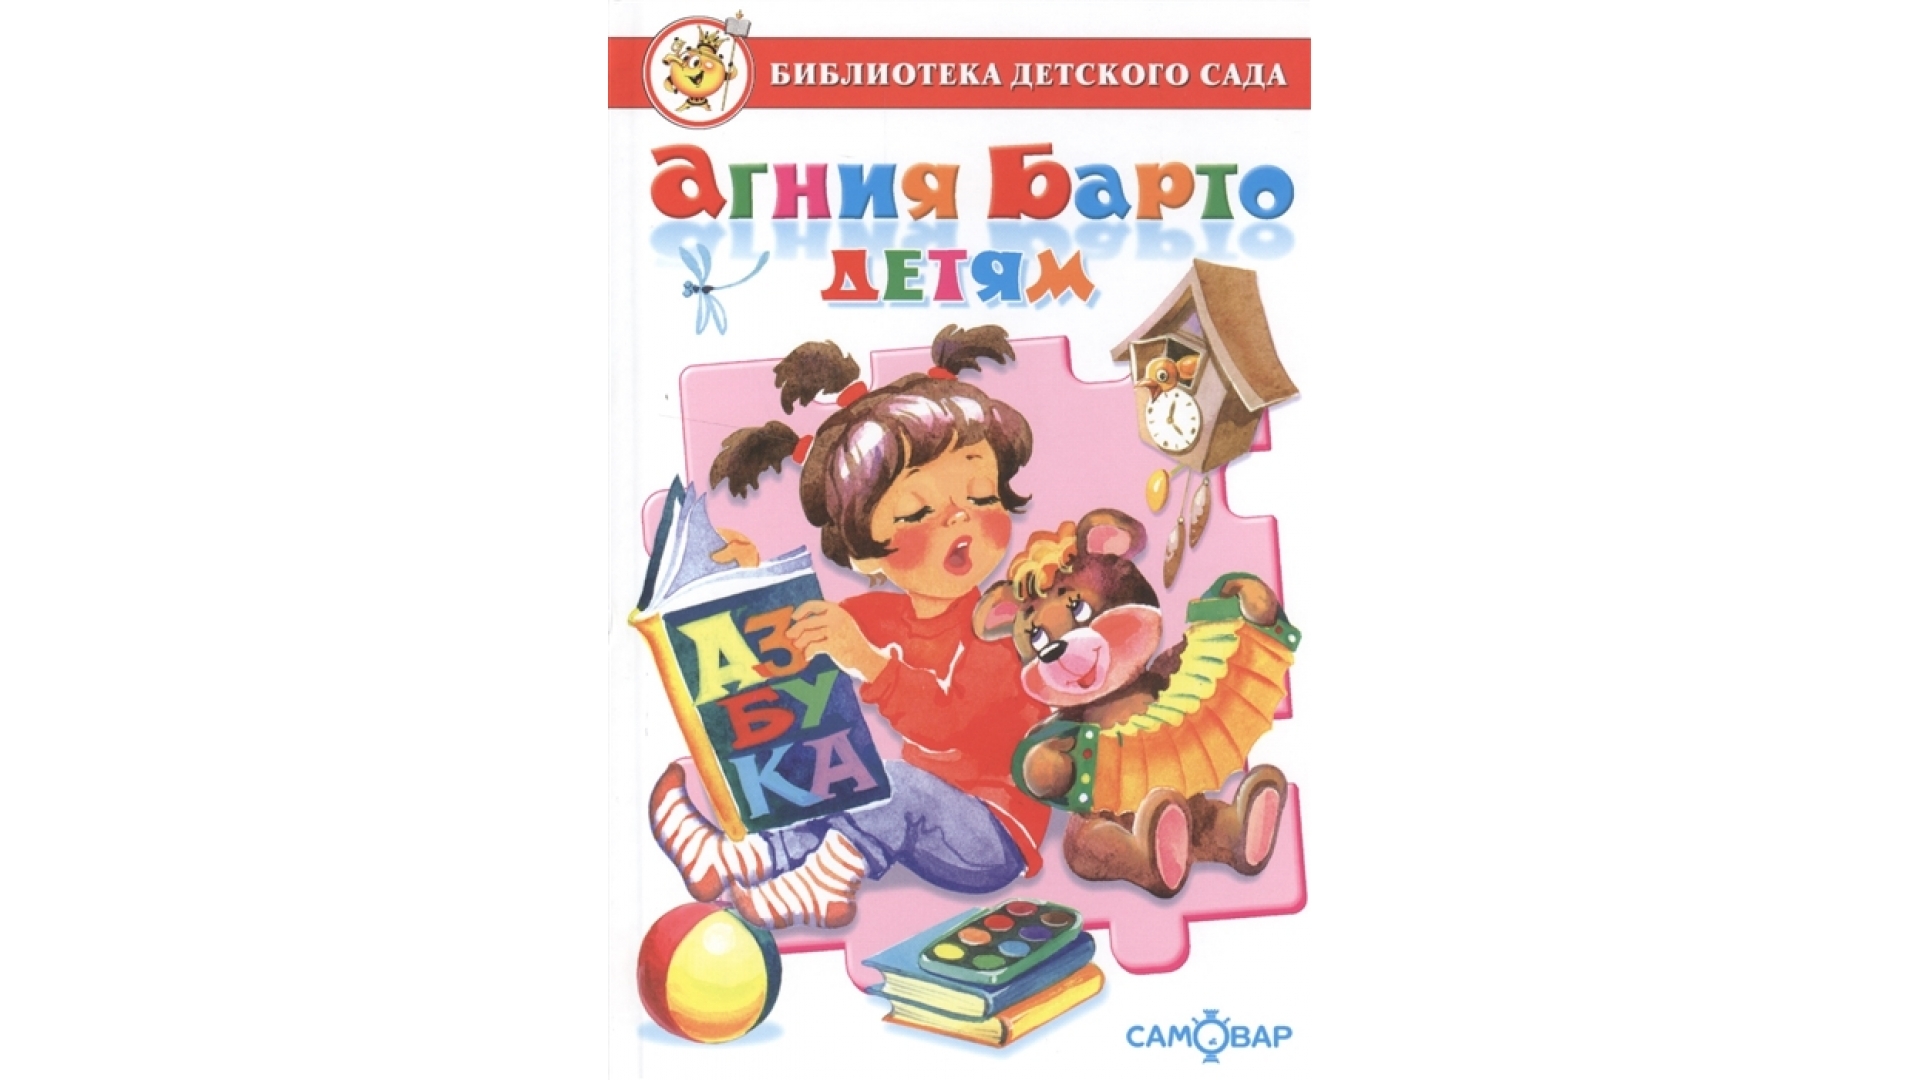 Вспомни какие произведения а барто. Книги Агнии Барто для детей. Барто книги для детей.